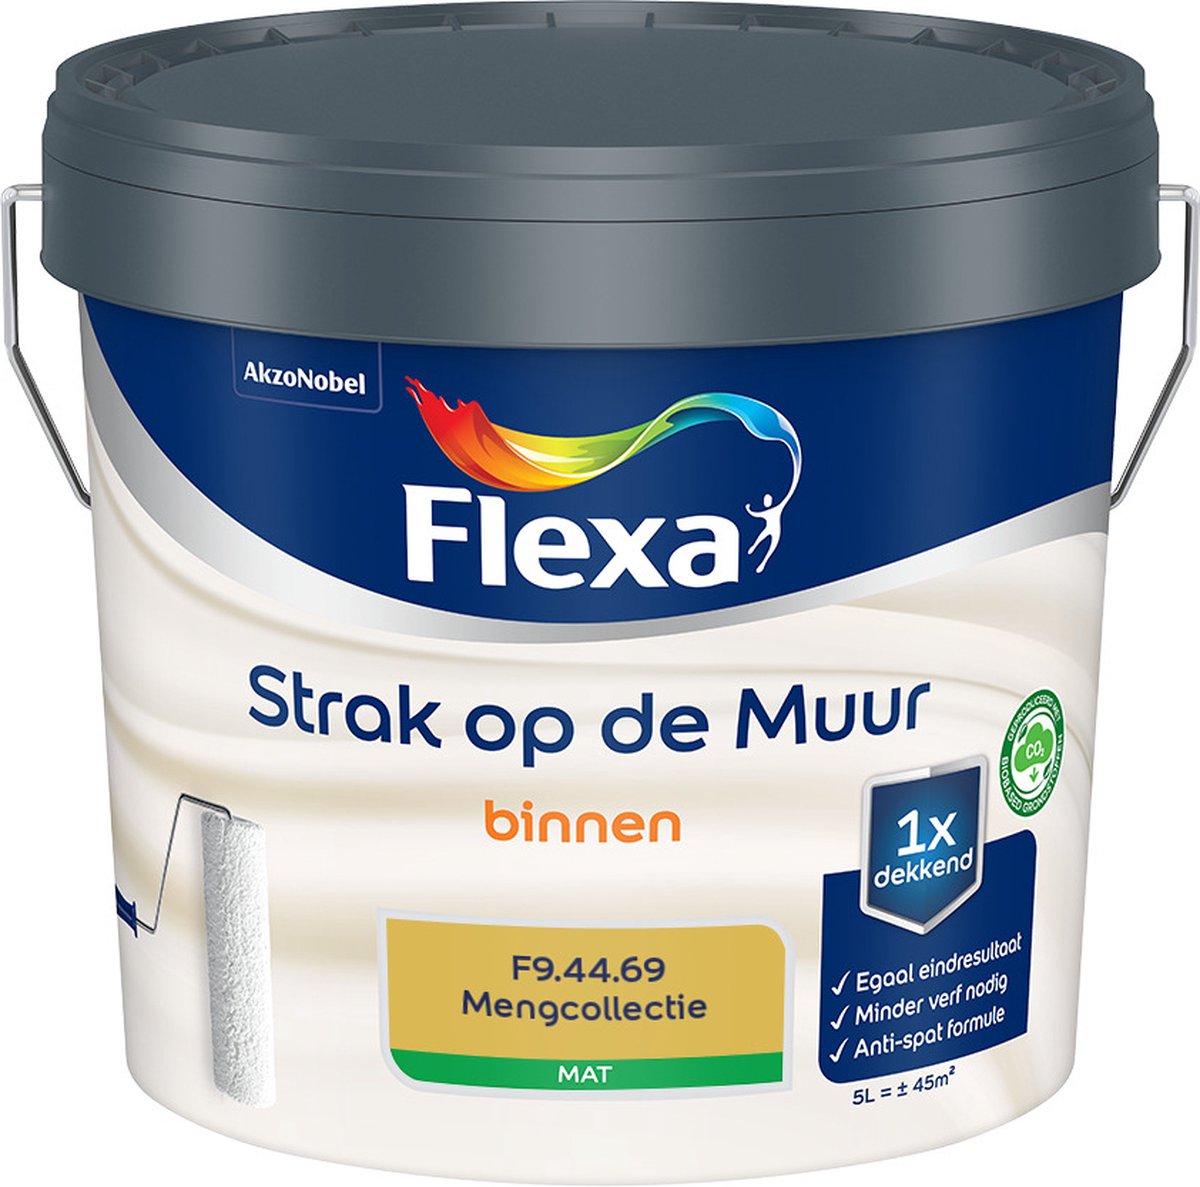 Flexa Strak op de muur - Muurverf - Mengcollectie - F9.44.69 - 5 Liter